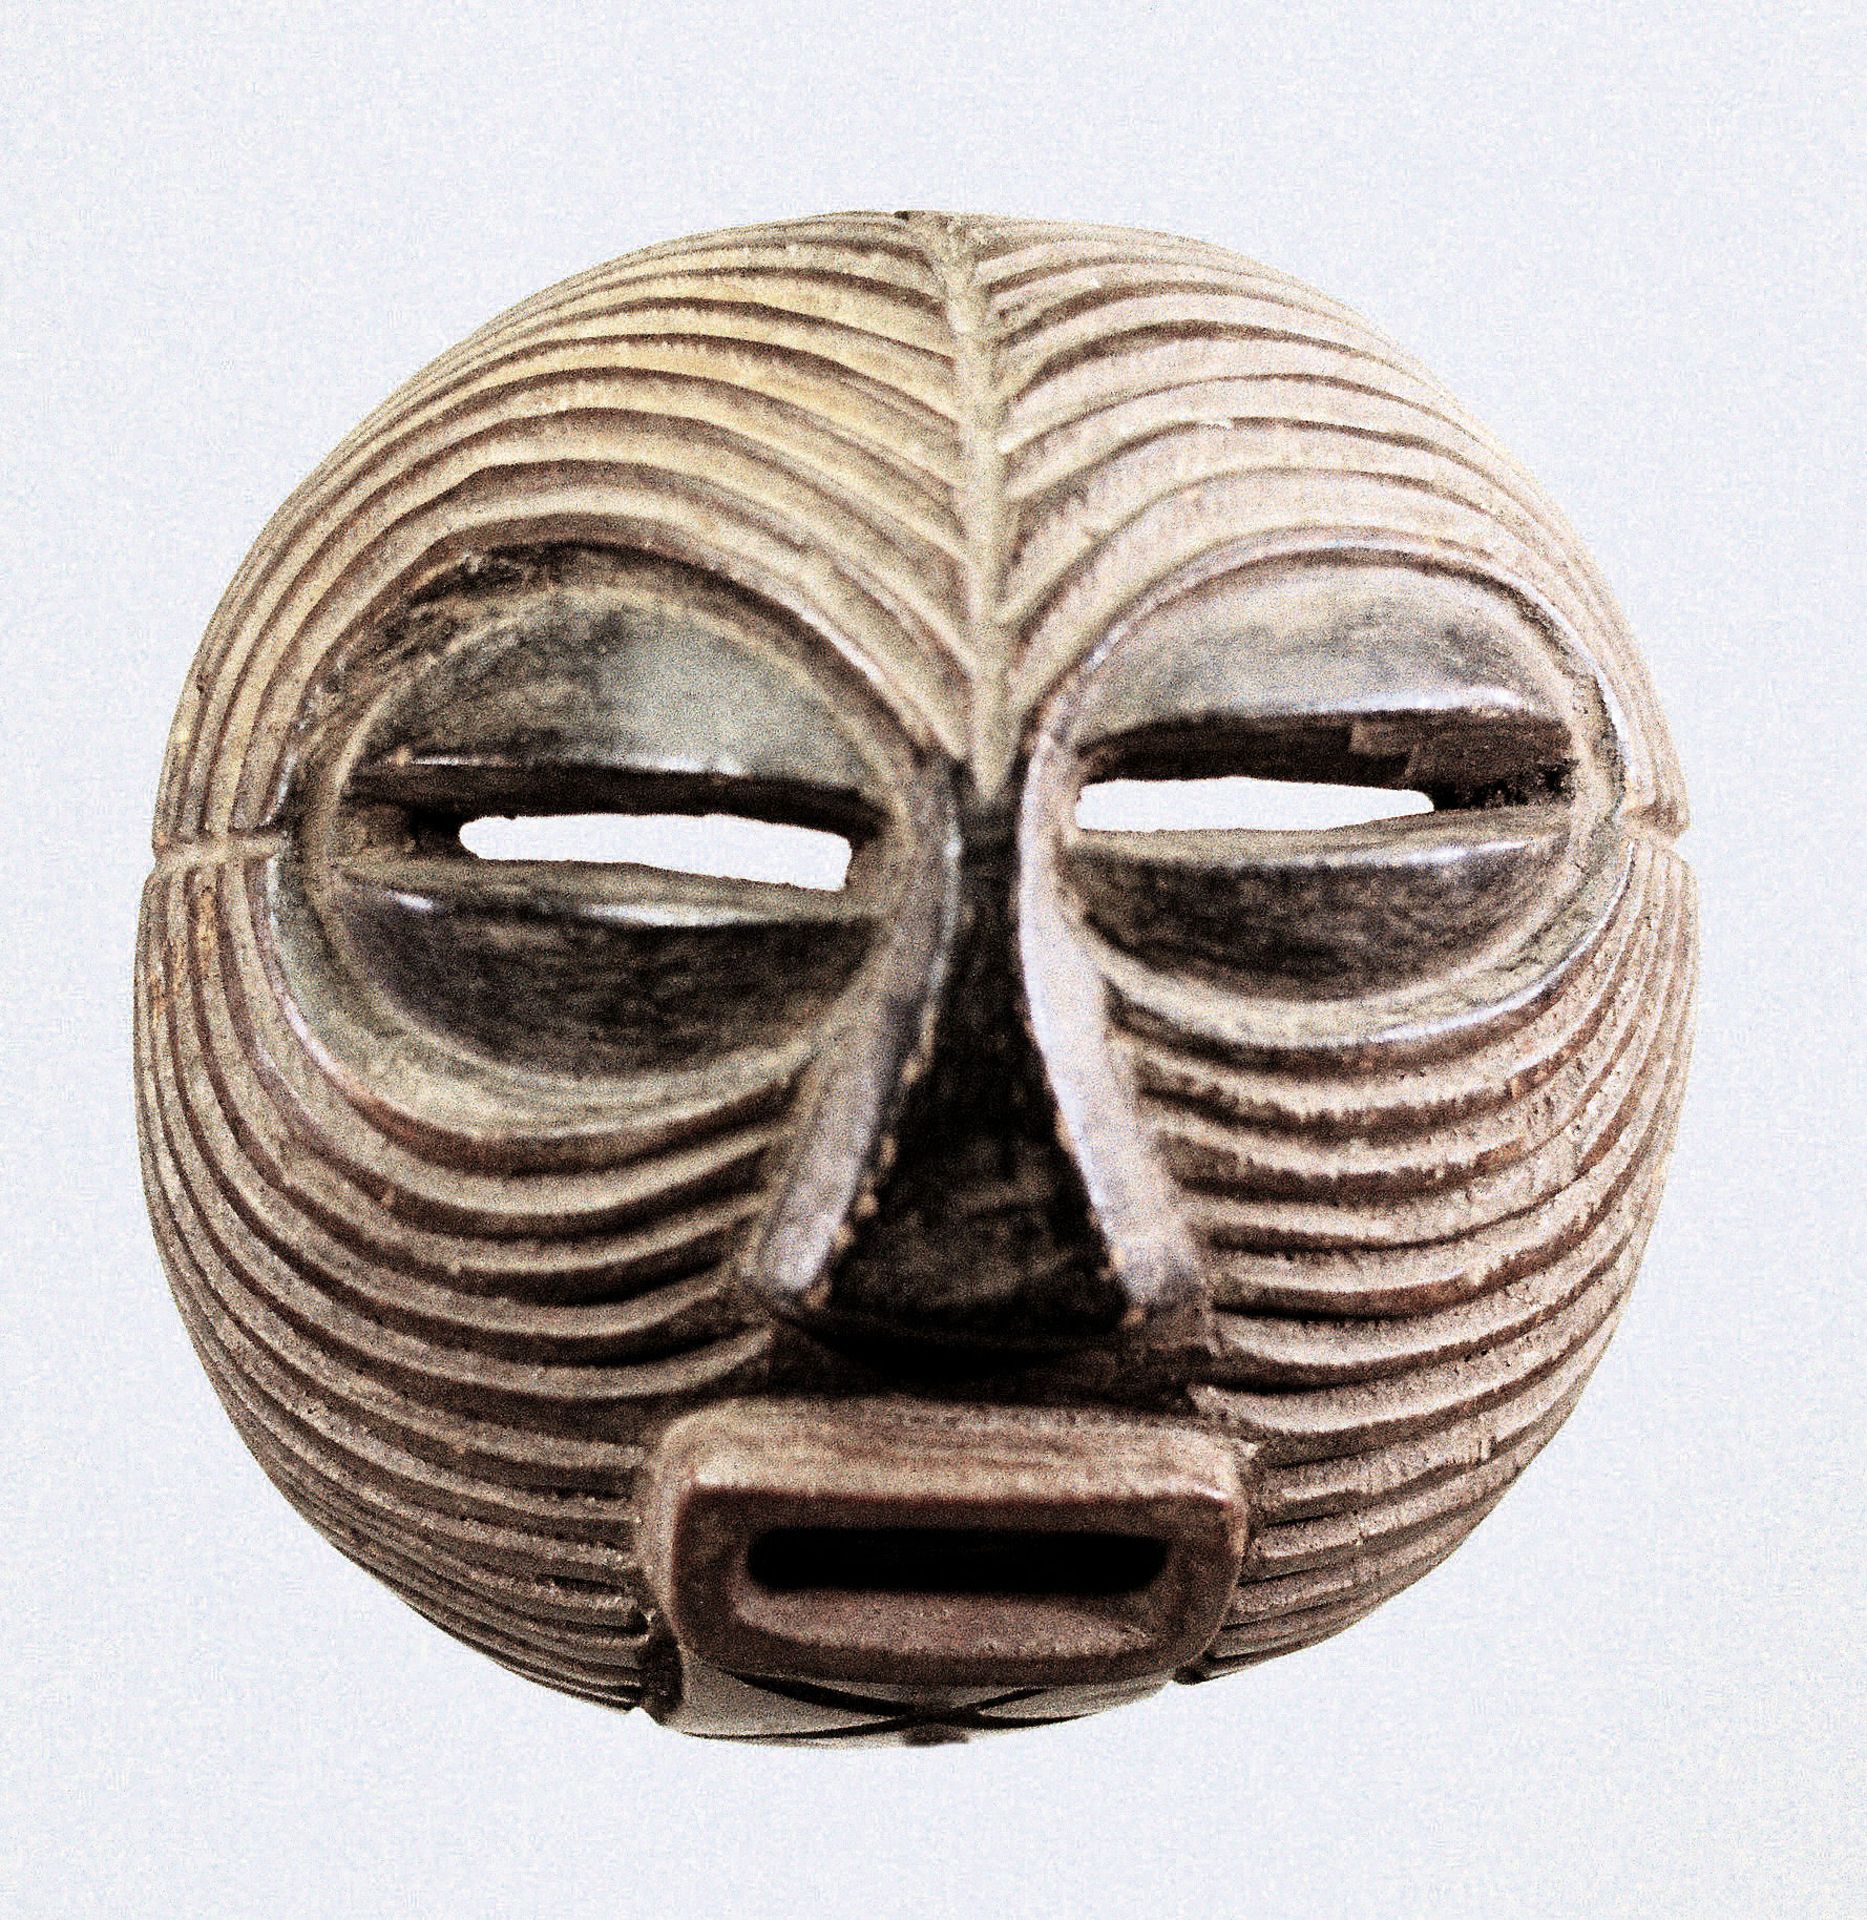 Kifwebe mask of the Luba, Congo